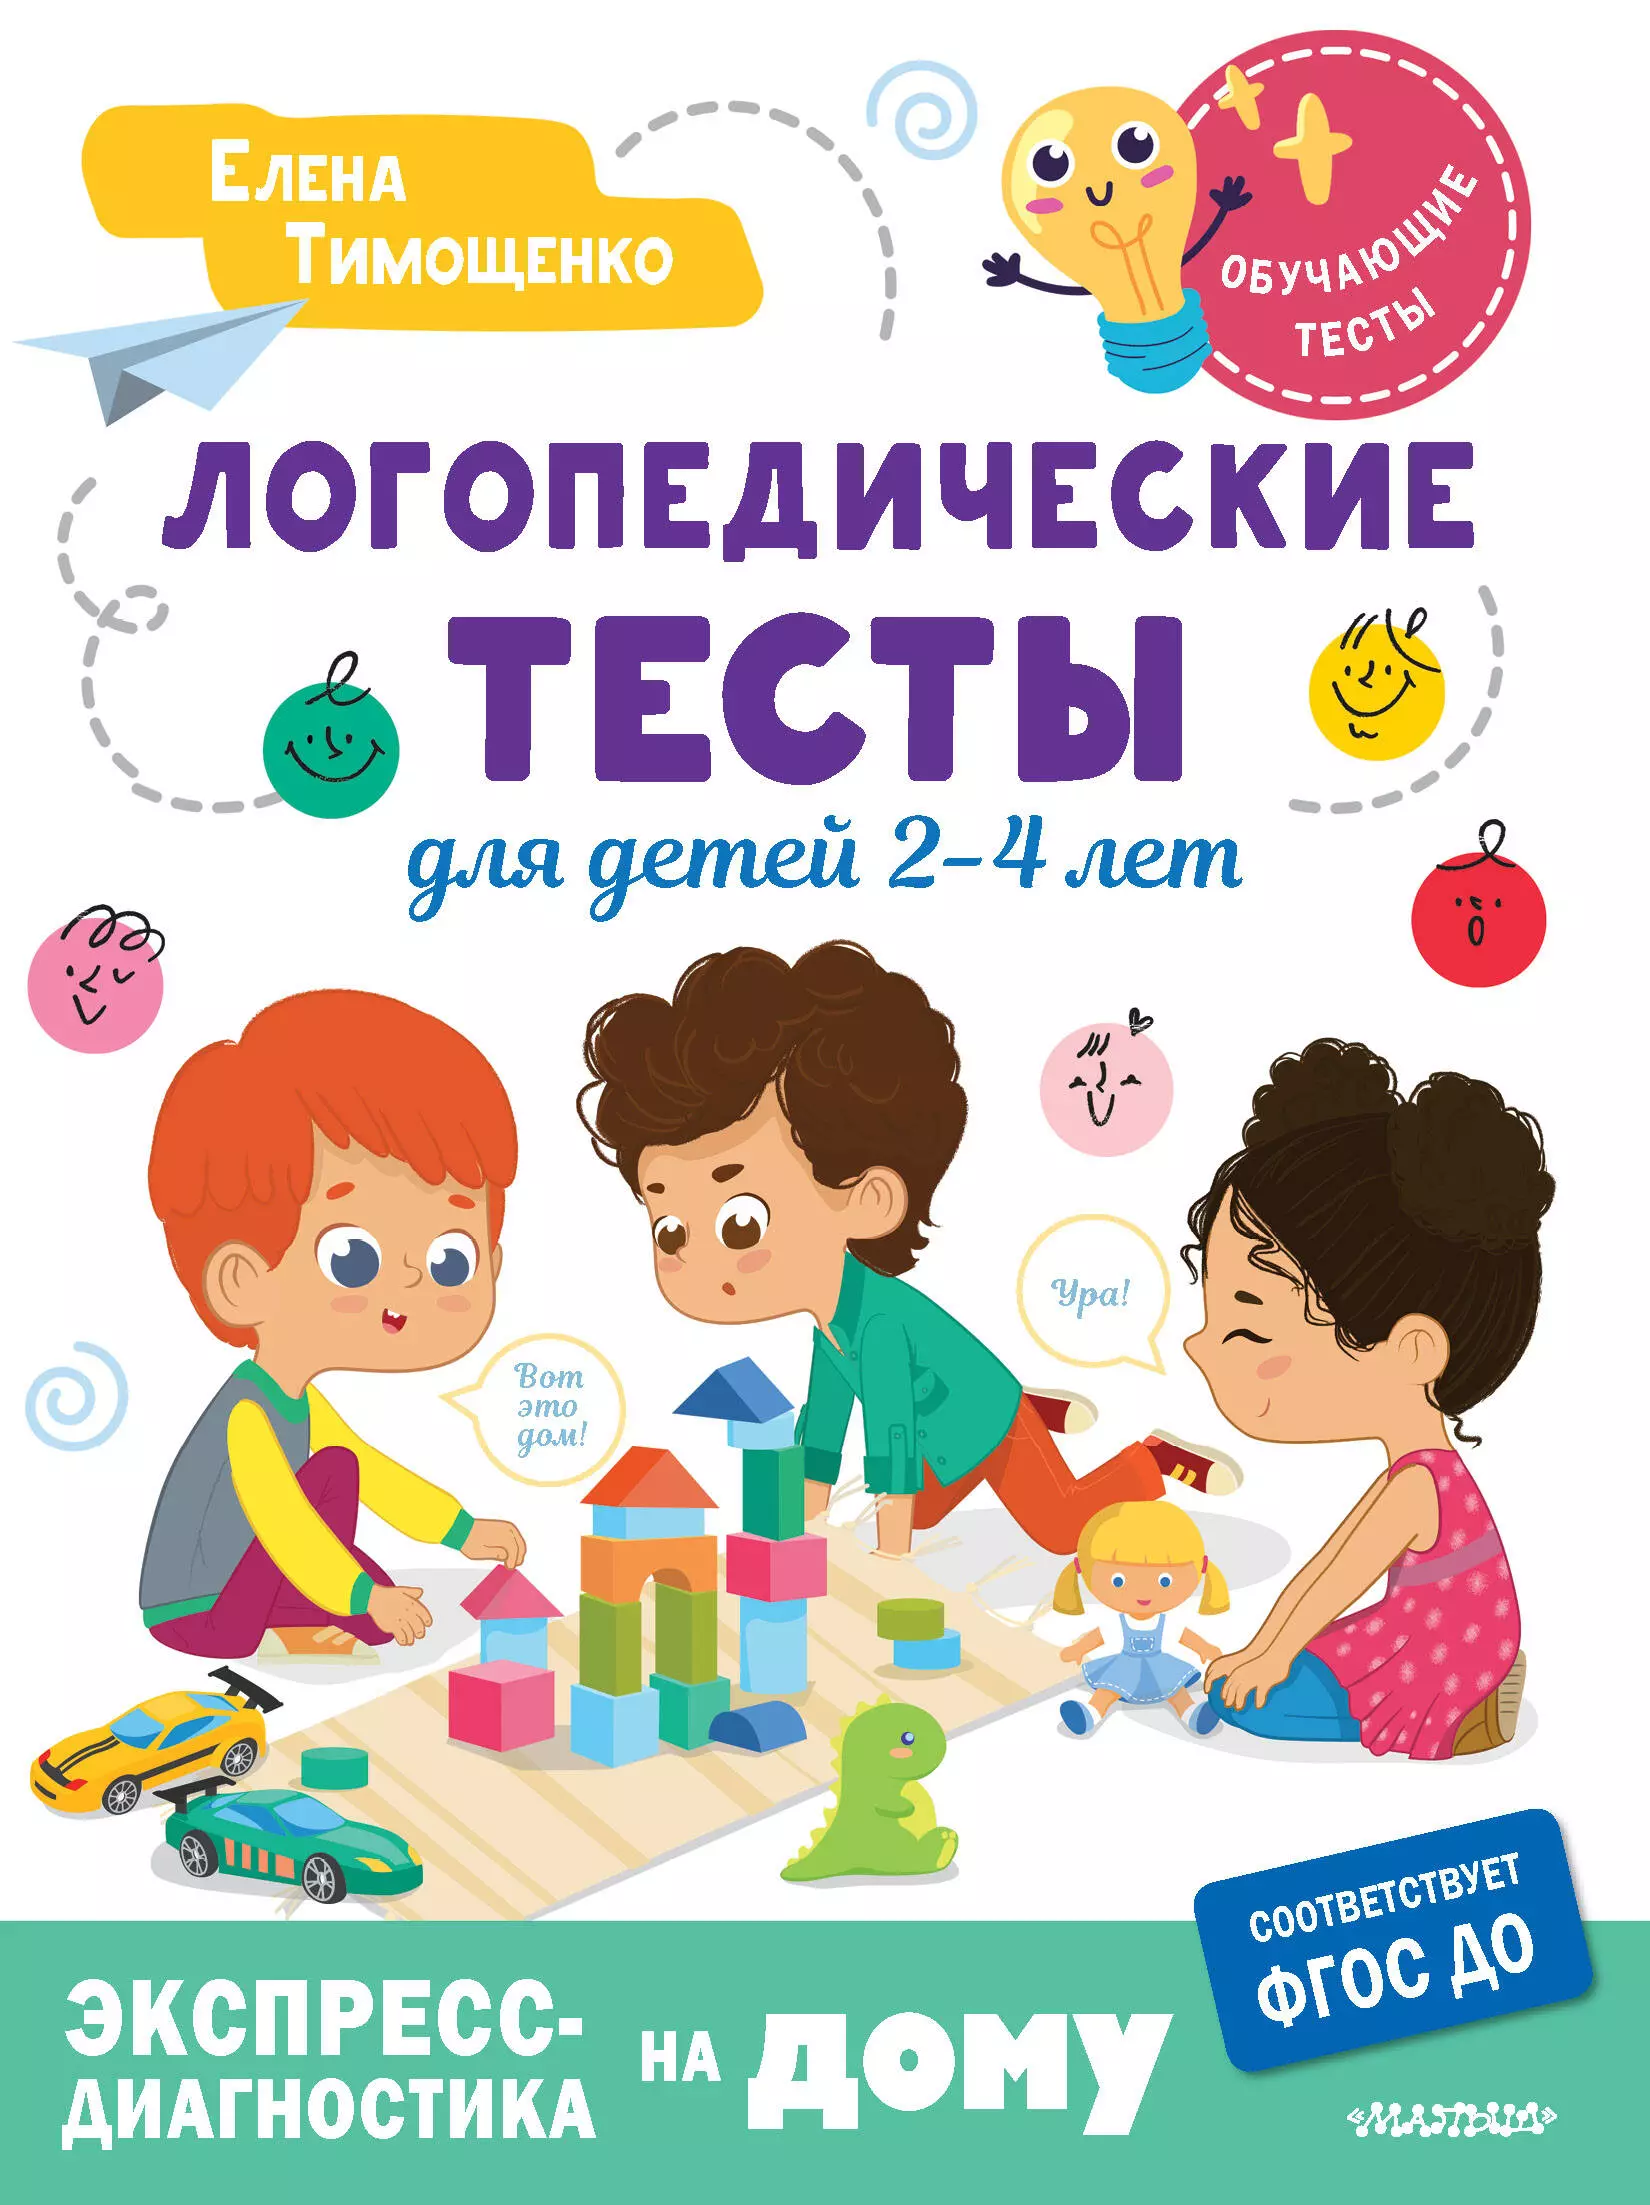 Тимощенко Елена Геннадьевна Логопедические тесты для детей 2-4 лет